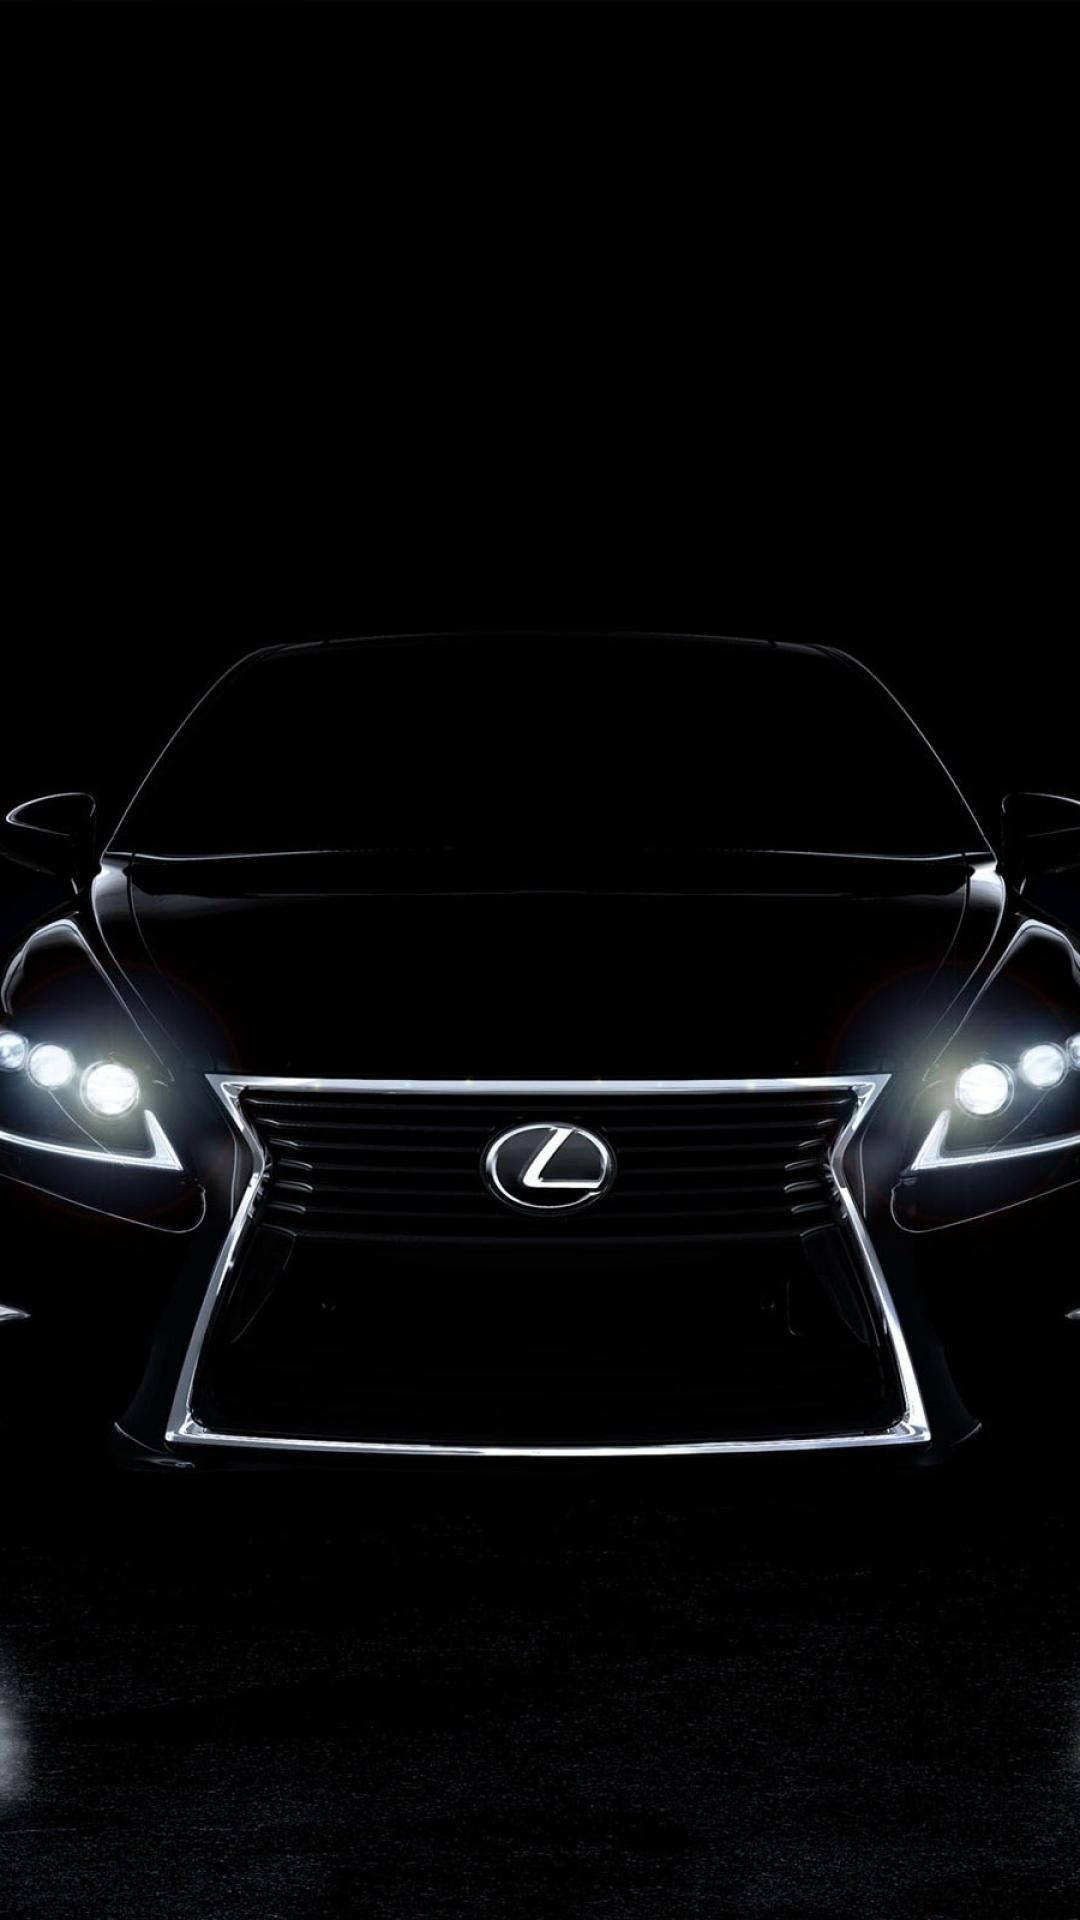 The Illuminated Emblem Of Luxury - Lexus Logo